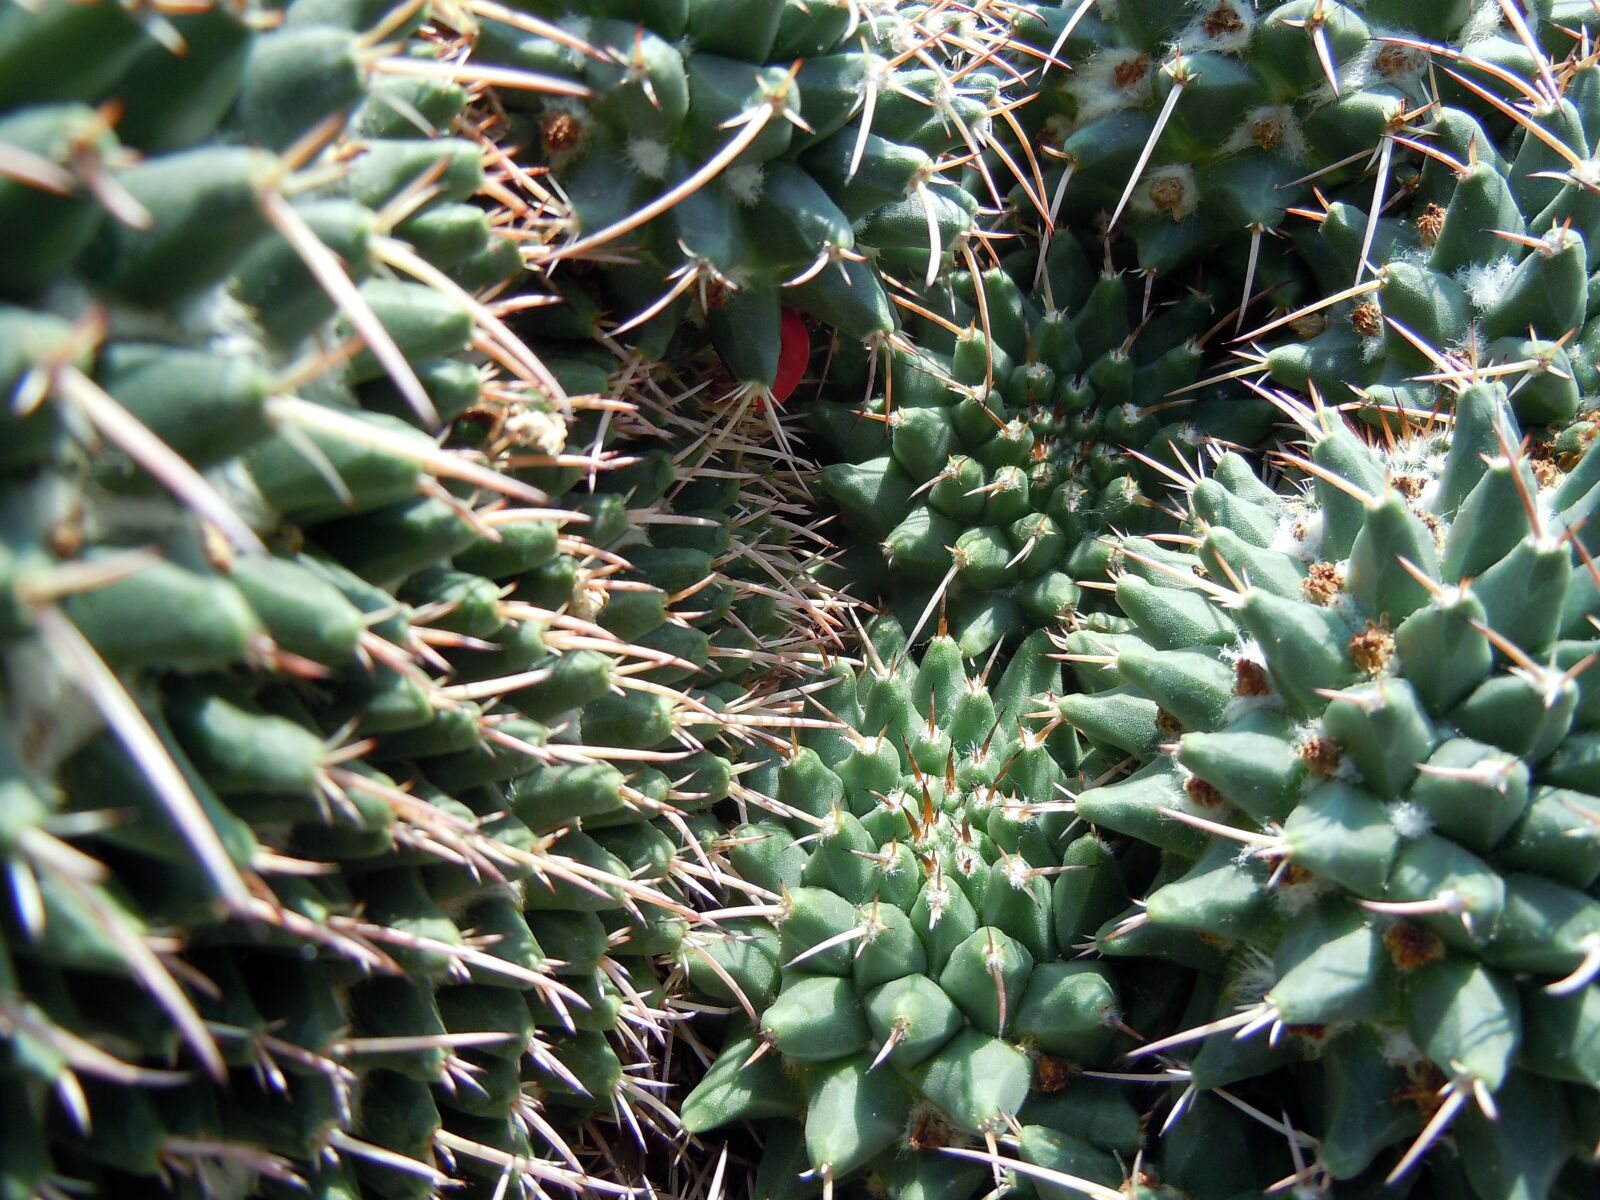 Nikon Coolpix S8000 sample photo. "Cactus, spur, plant" photography